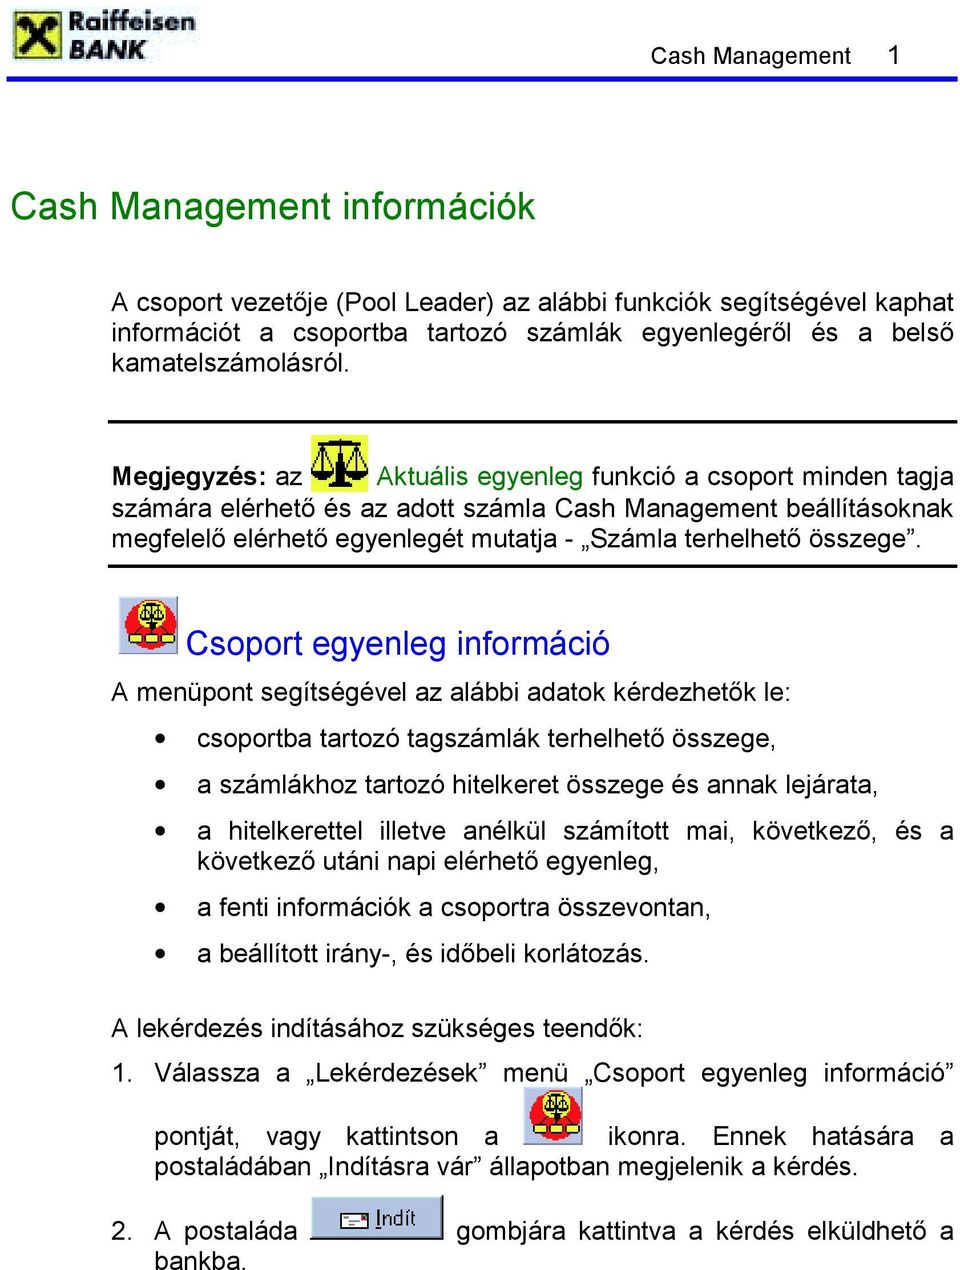 Megjegyzés: az Aktuális egyenleg funkció a csoport minden tagja számára elérhető és az adott számla Cash Management beállításoknak megfelelő elérhető egyenlegét mutatja - Számla terhelhető összege.